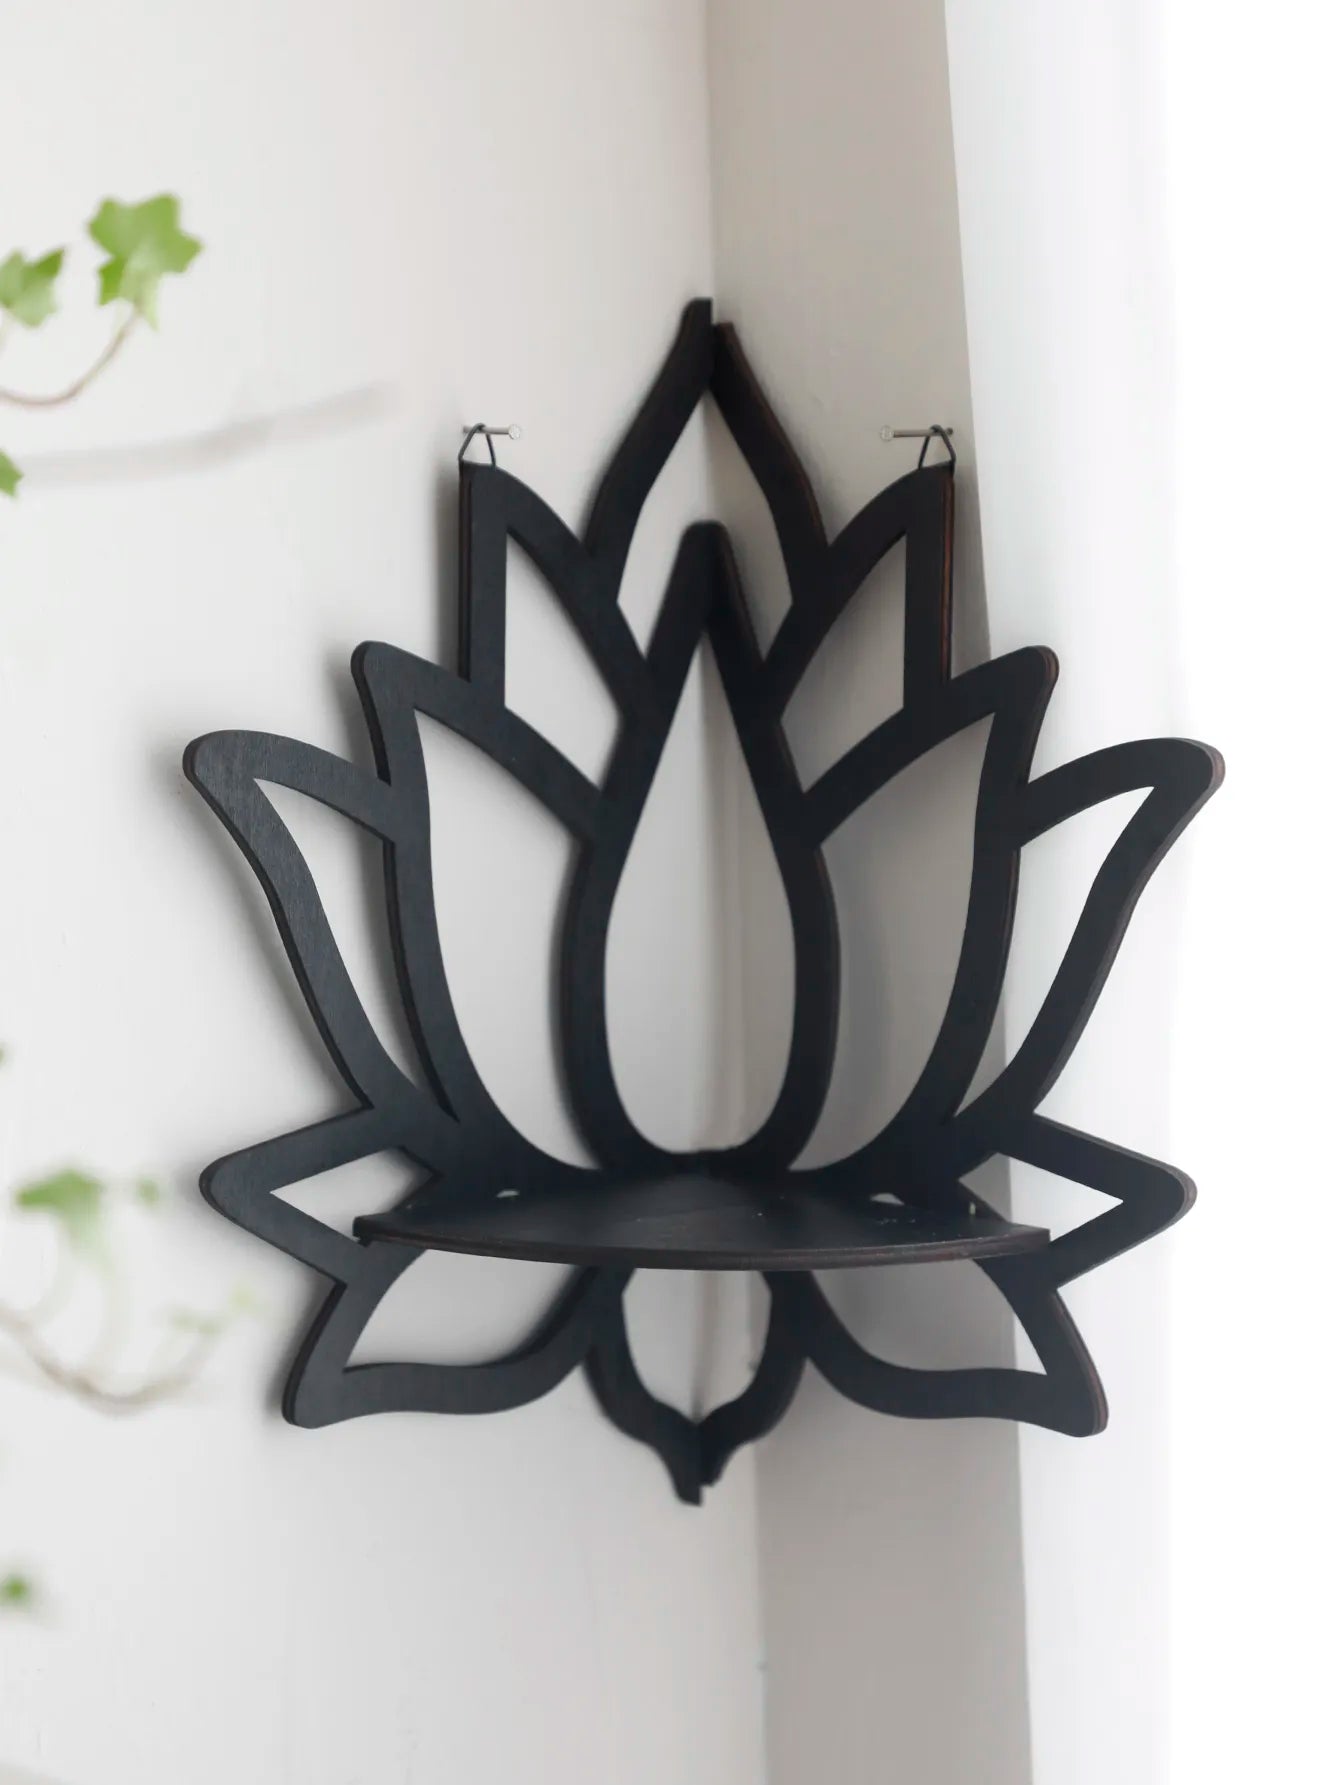 Lotus Crystal Cornerhylly Kristallihylly Näyttää mustan puisen seinän hyllyt eteeriset öljyhylly noita sisustus esteettinen hengellinen